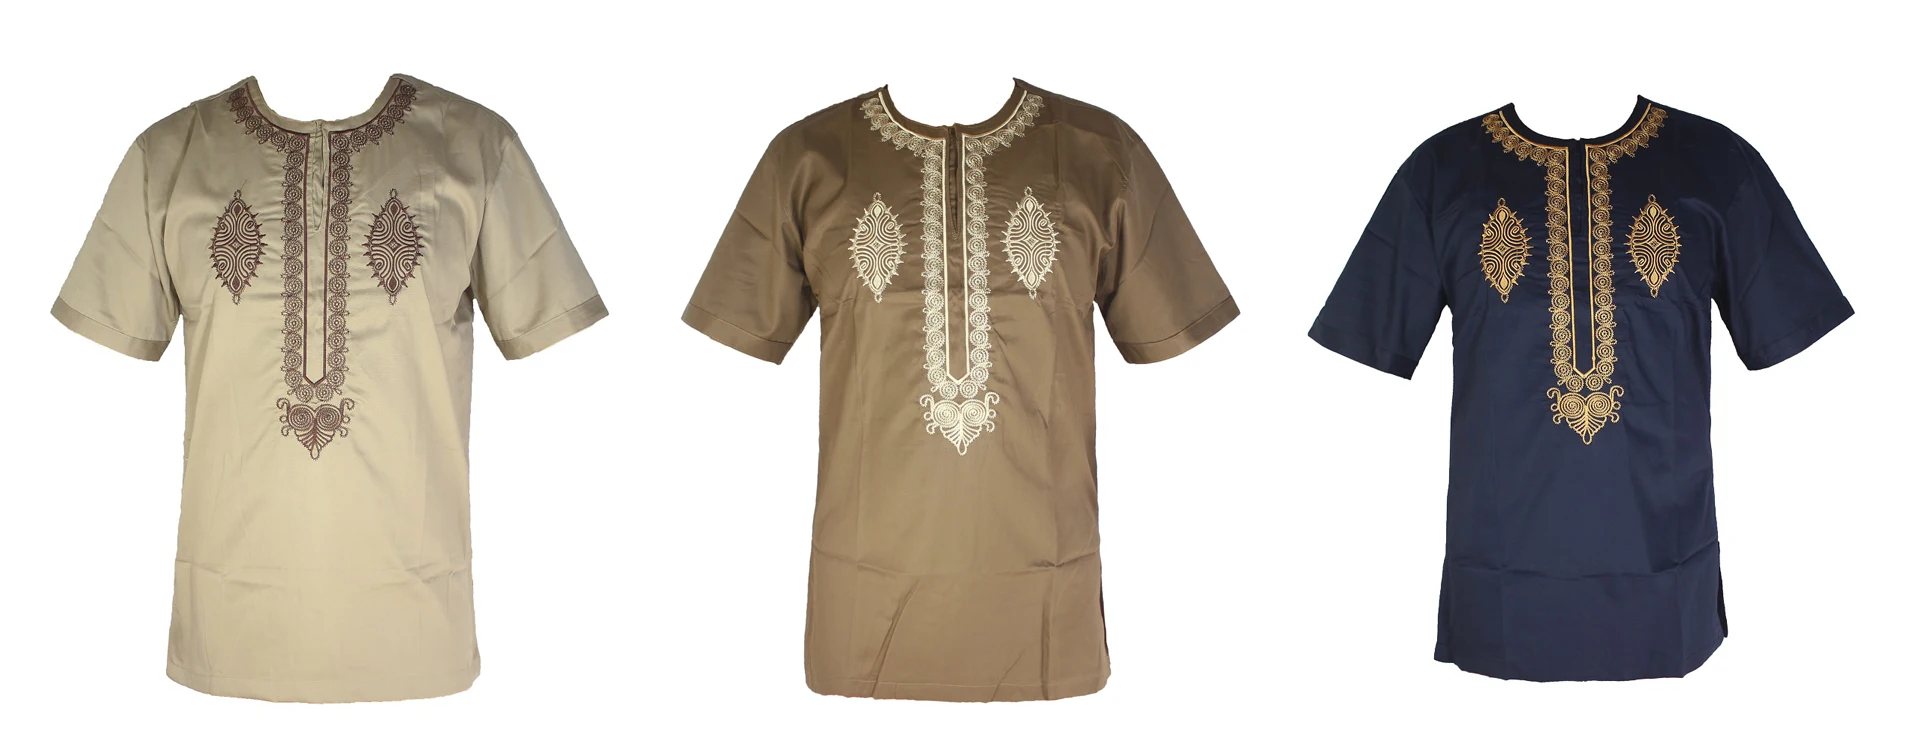 Новая свадебная одежда в африканском стиле Базен вышивка мужская рубашка африканс Топы Африканский кафтан туника одежда